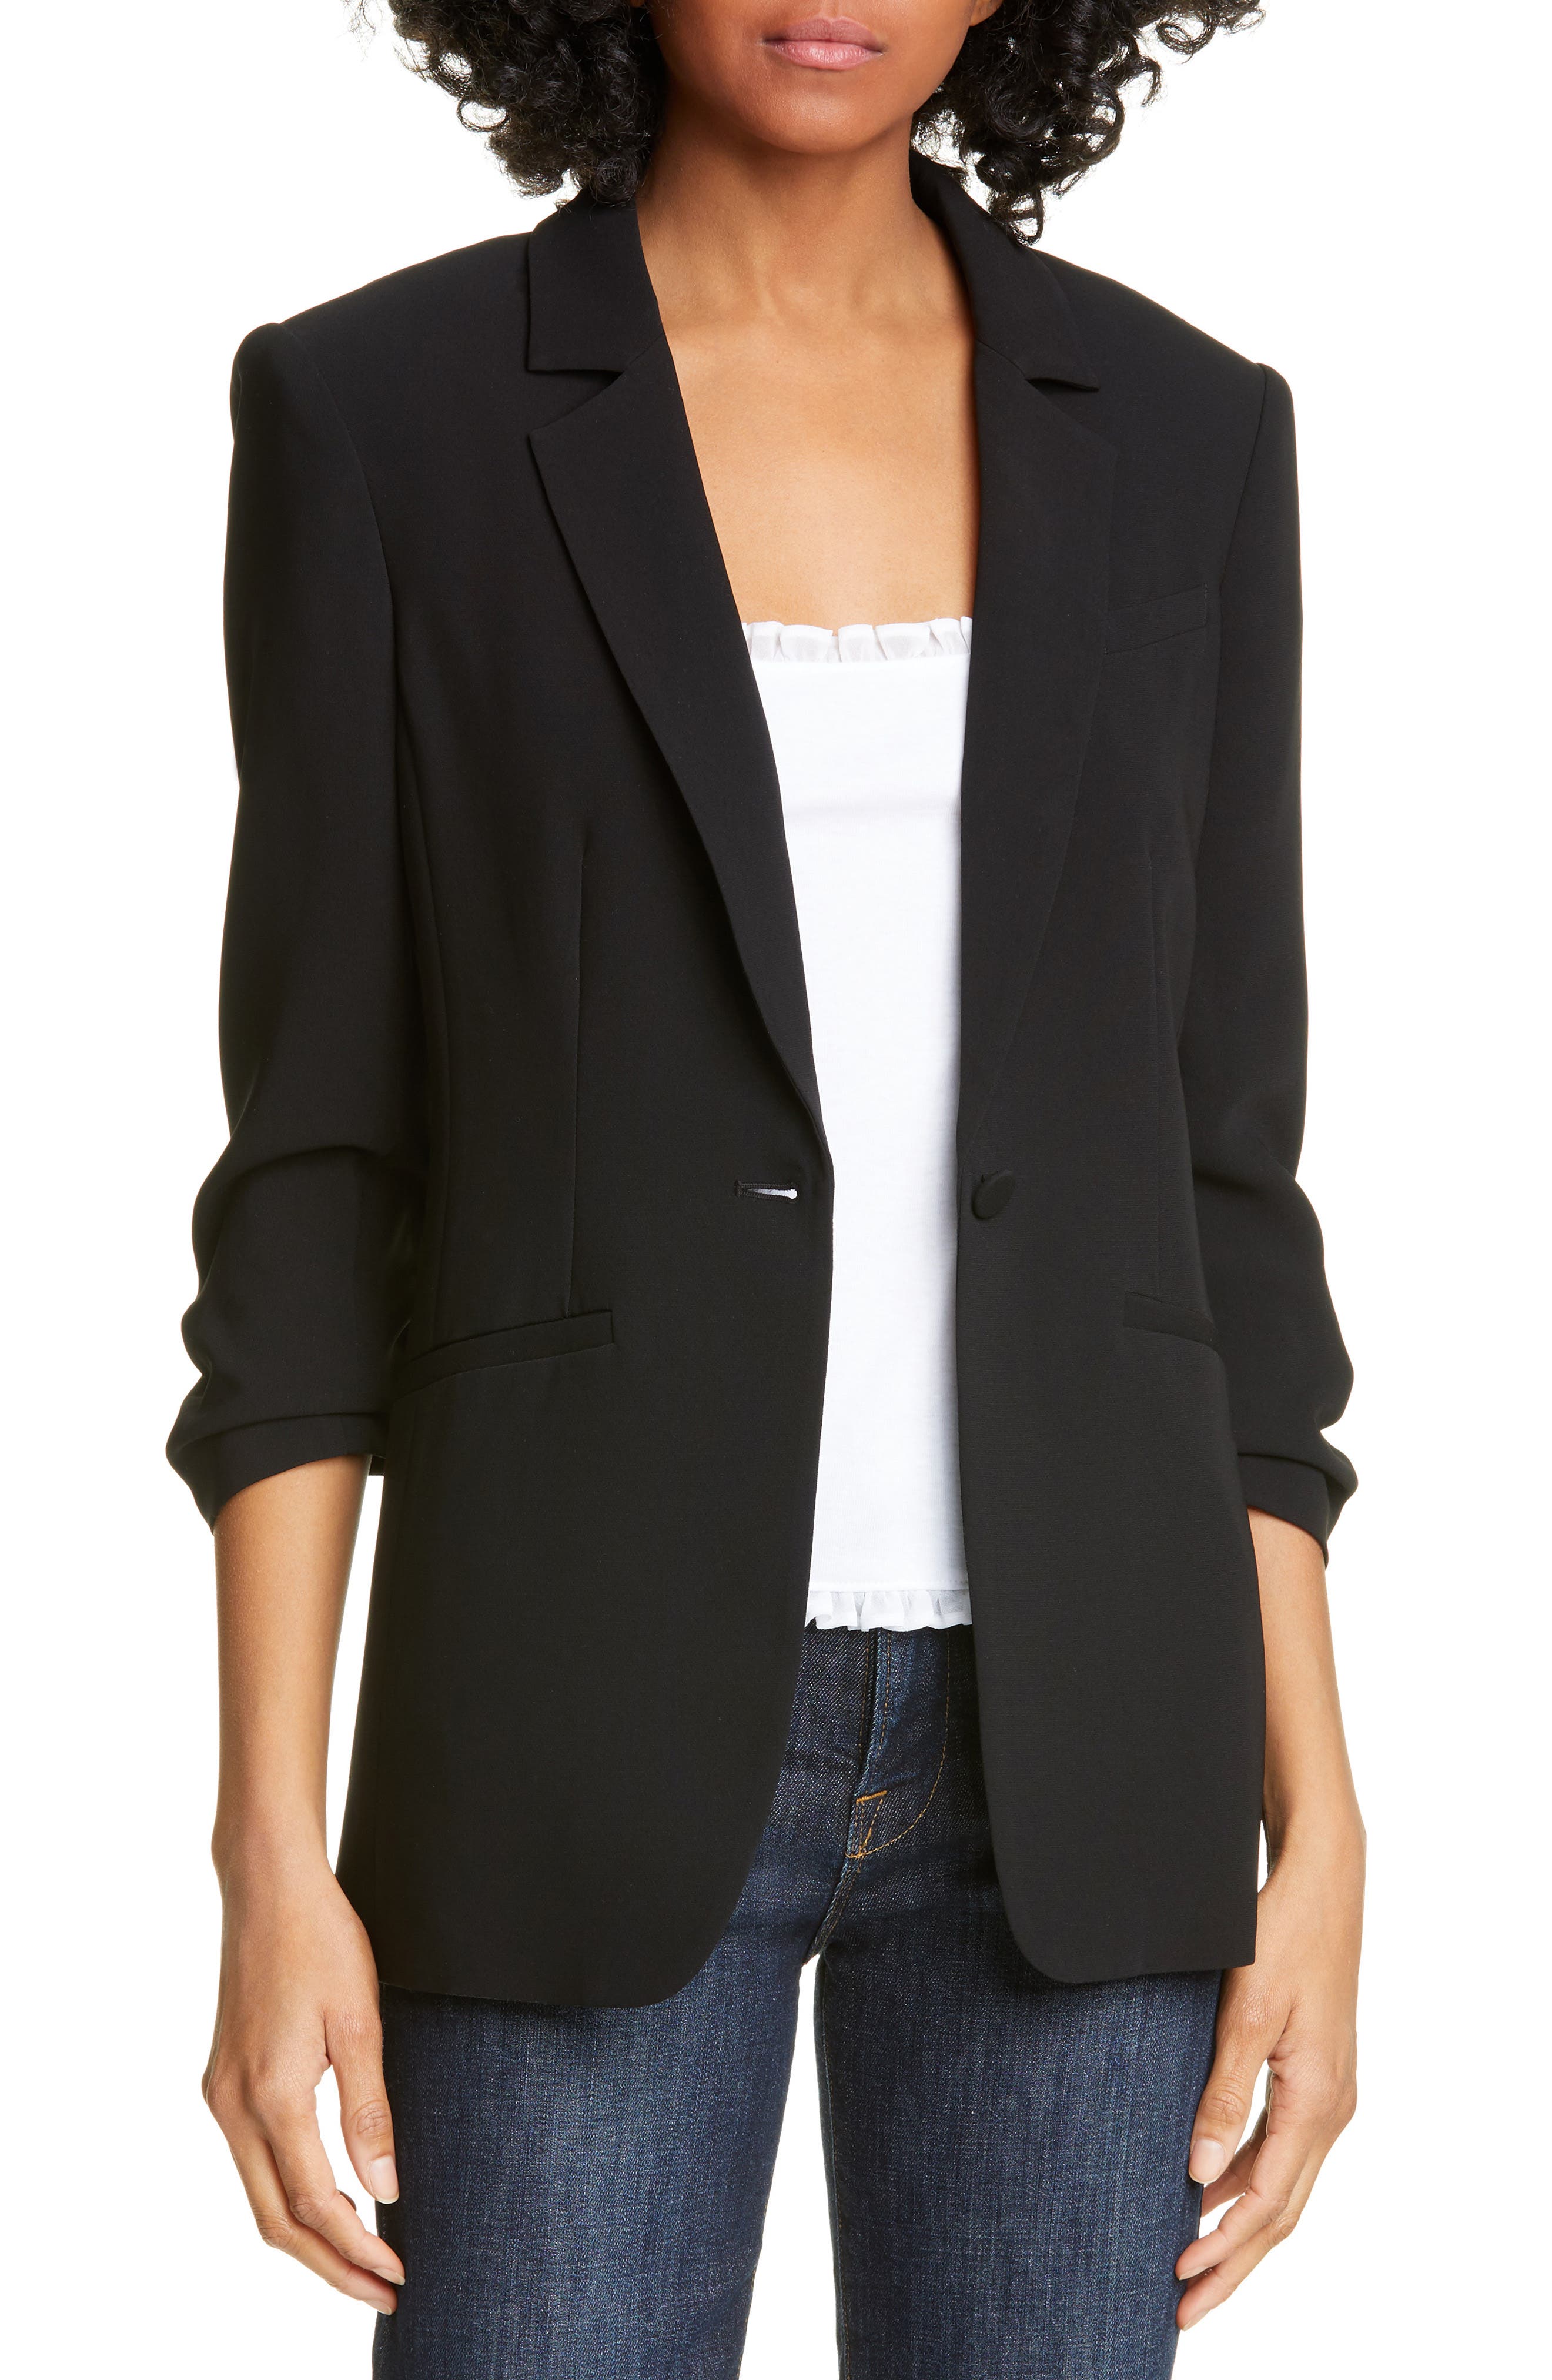 WOMEN FASHION Jackets Blazer Sequin Black M discount 70% Esmara blazer 